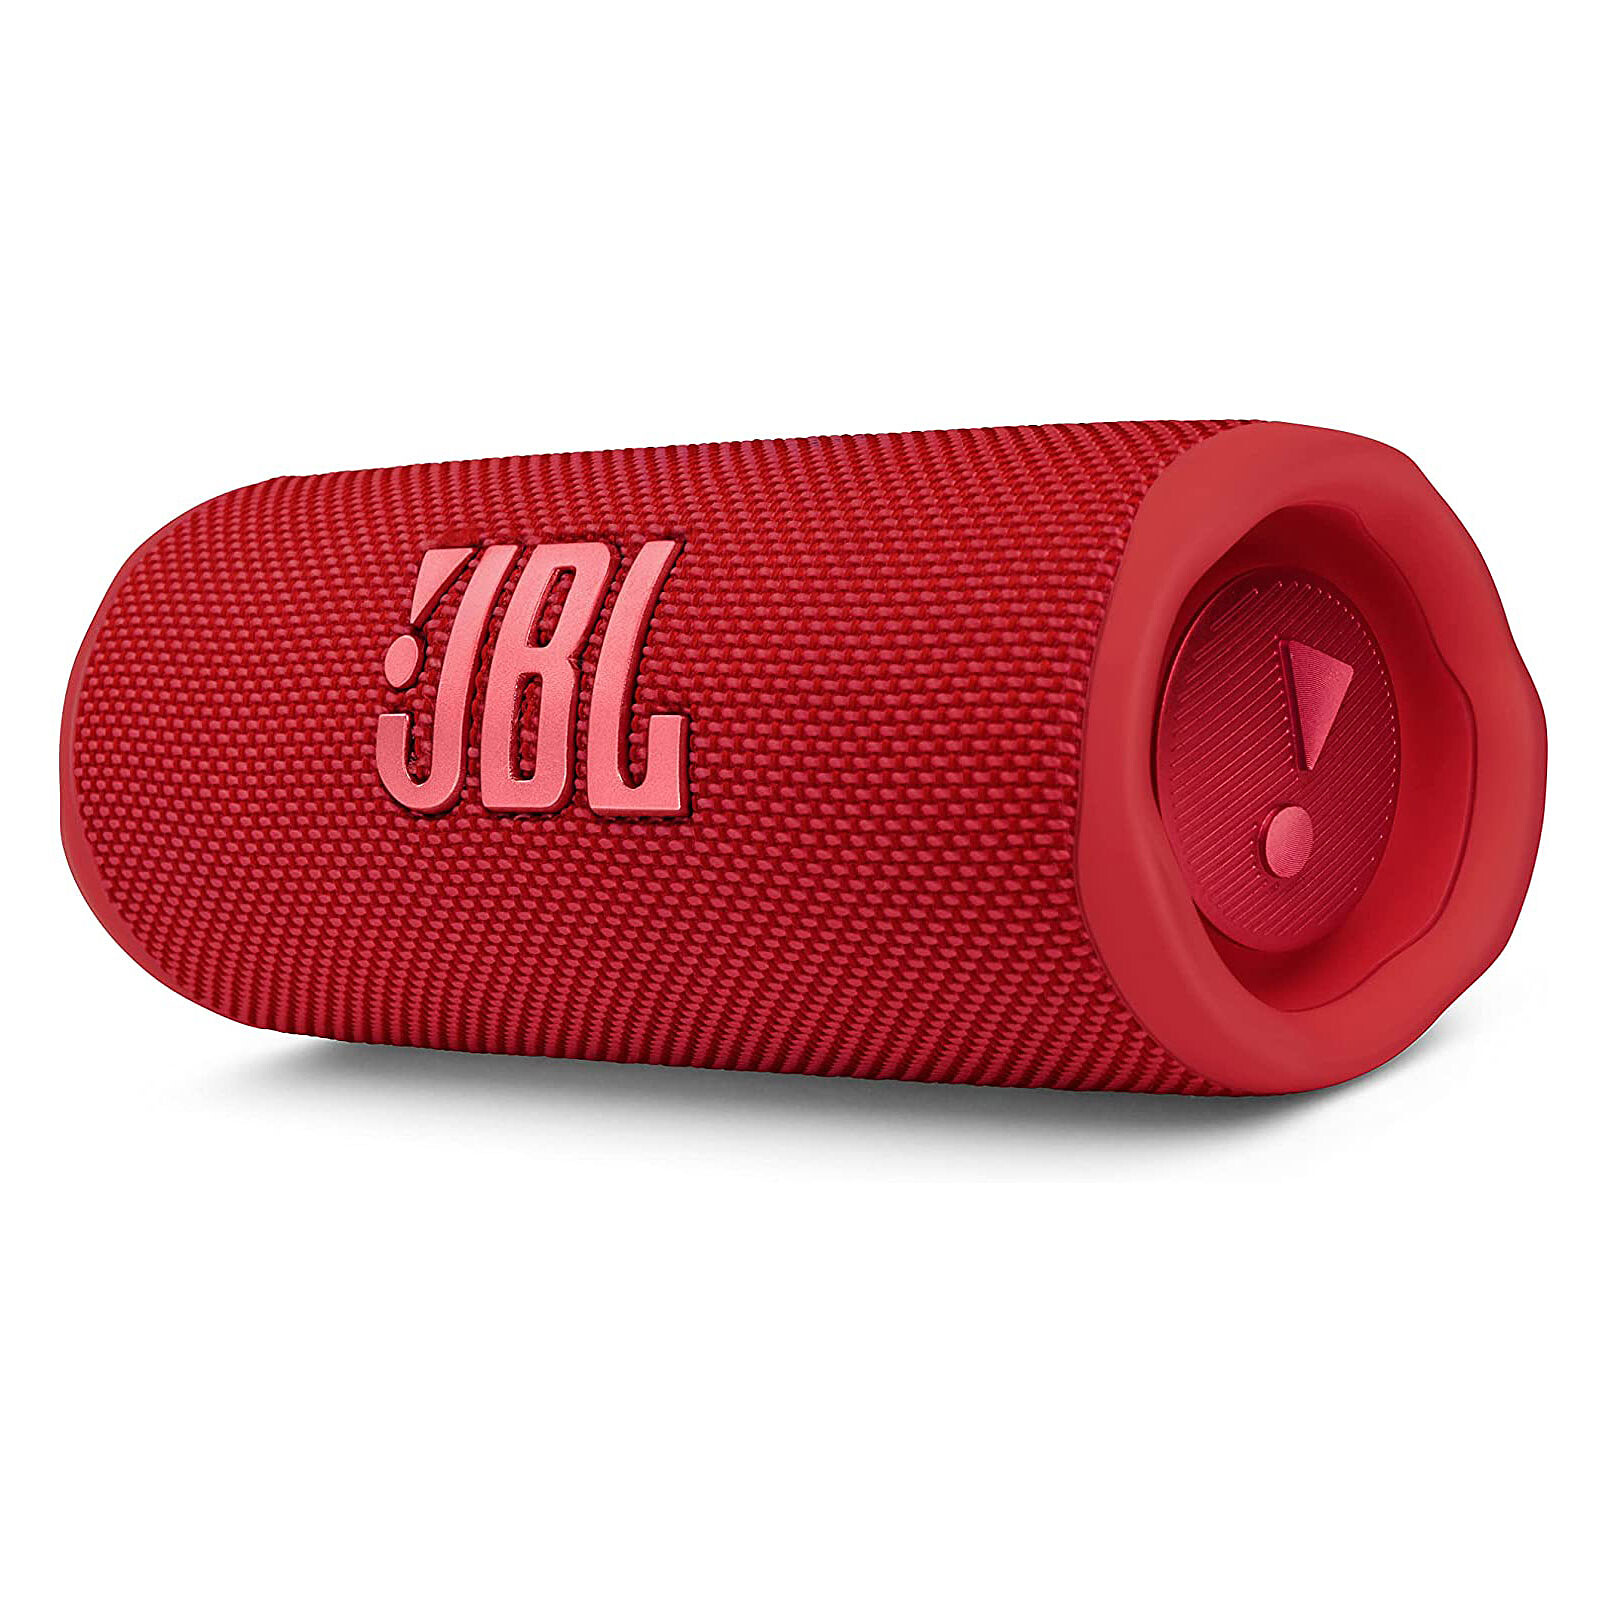 JBL Pulse 5 Black - Bluetooth speaker - LDLC 3-year warranty